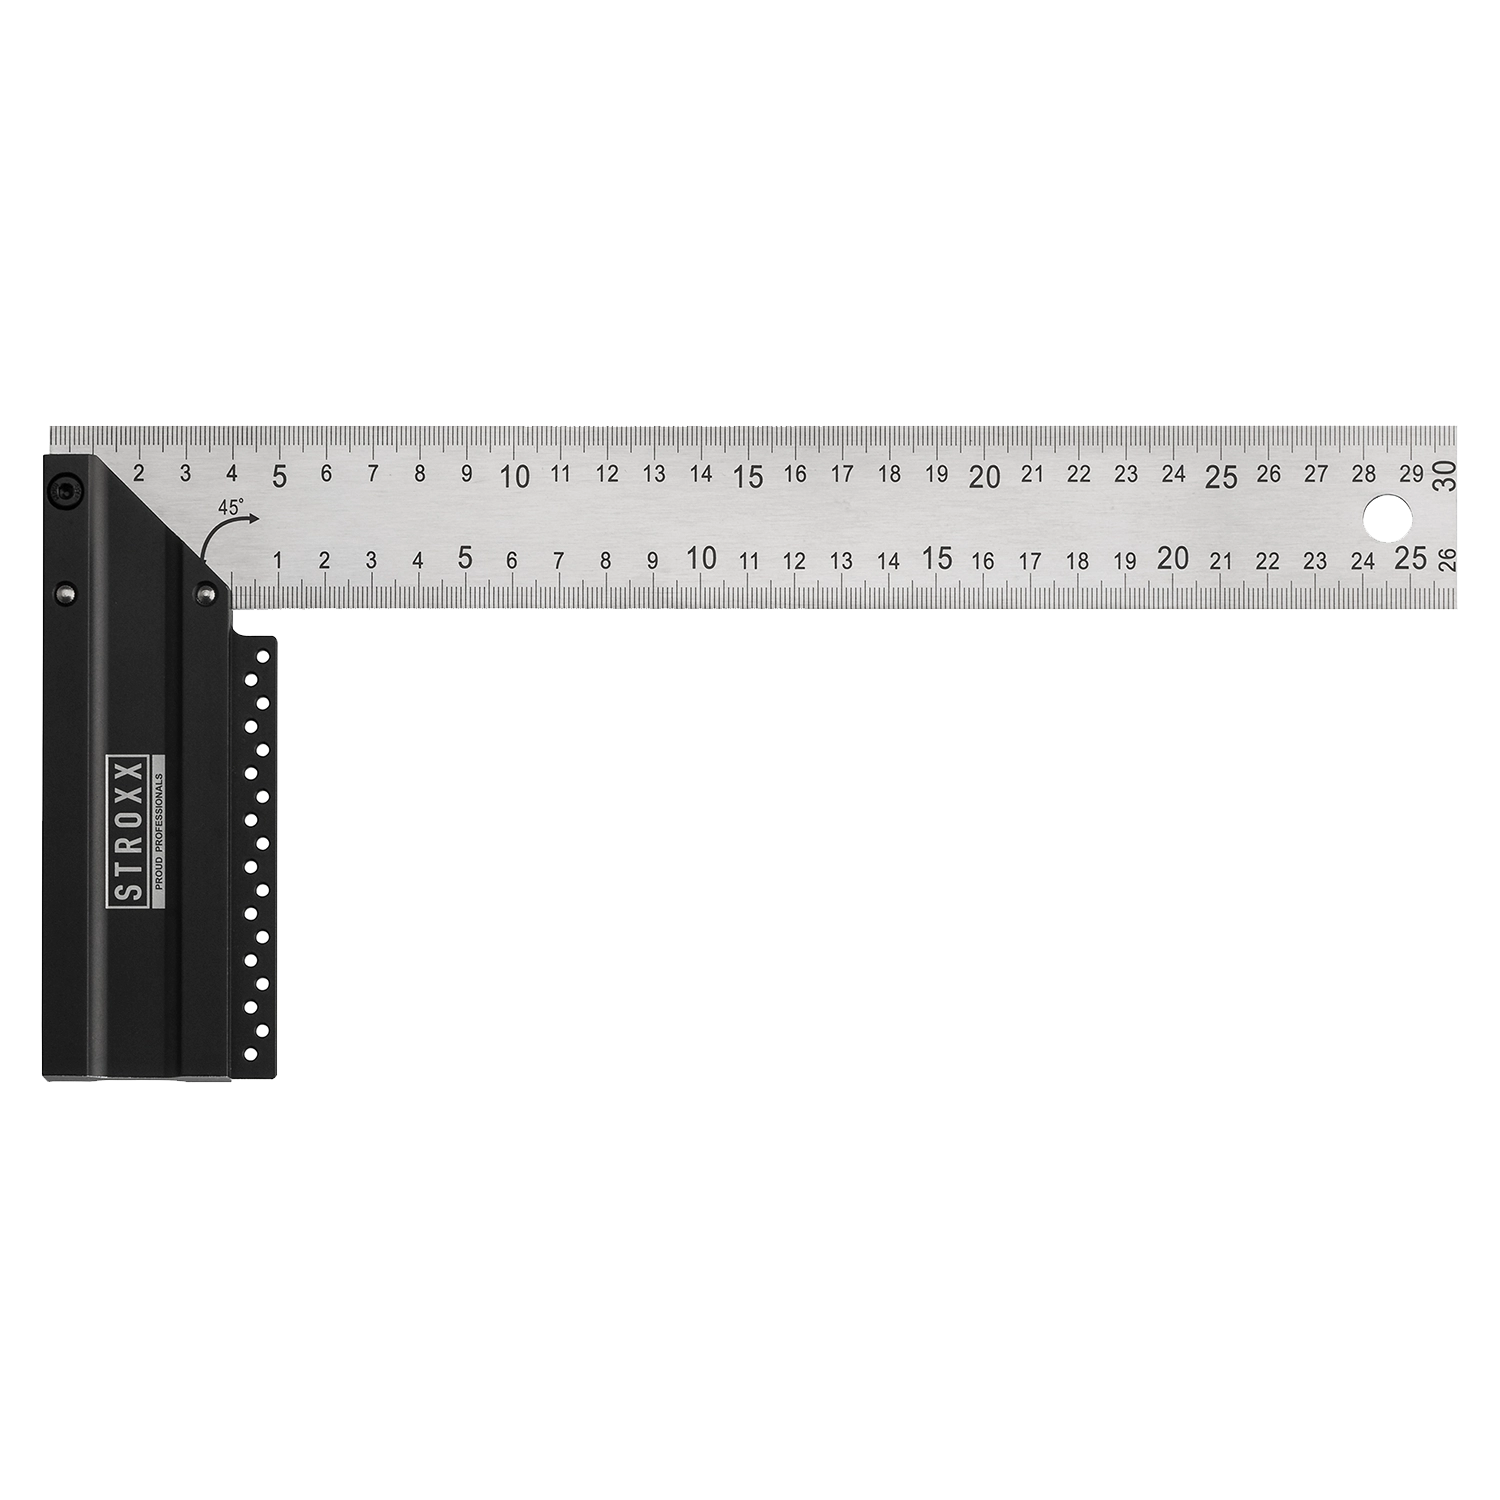 Zwart-grijze STROXX hoekmeter. Metalen meetlat. Afmetingen van 30 en 25 cm. Hoek 45°.